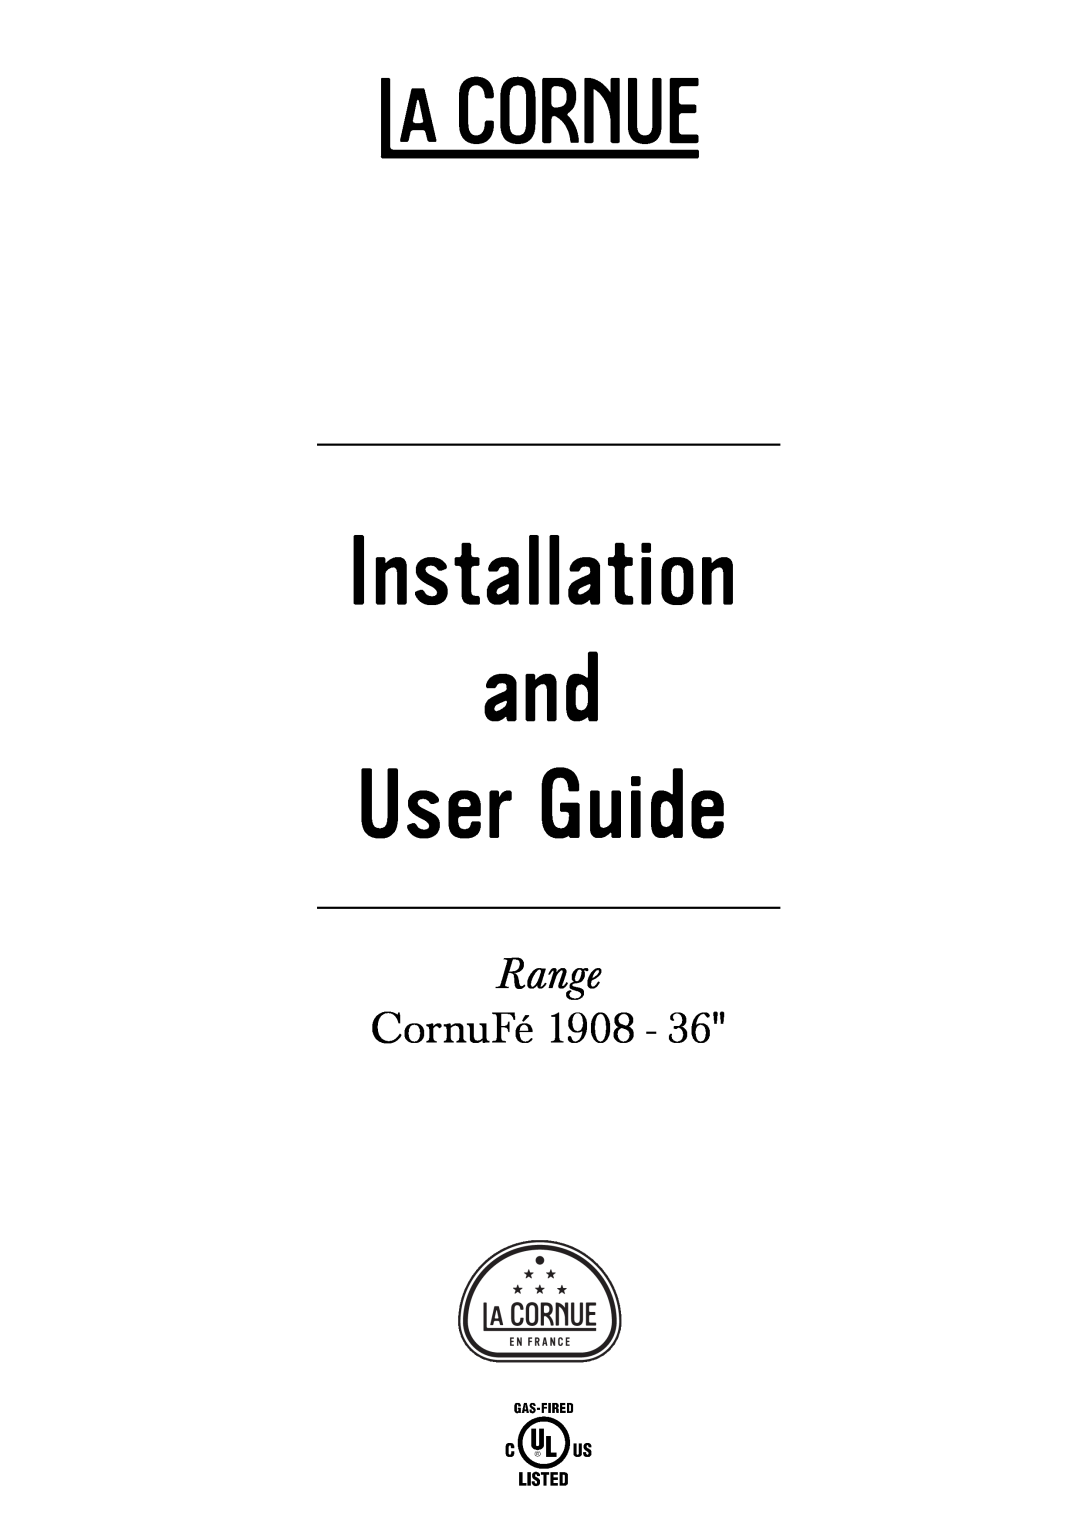 GE 1908 - 36 manual Installation and User Guide, Range, CornuFé 